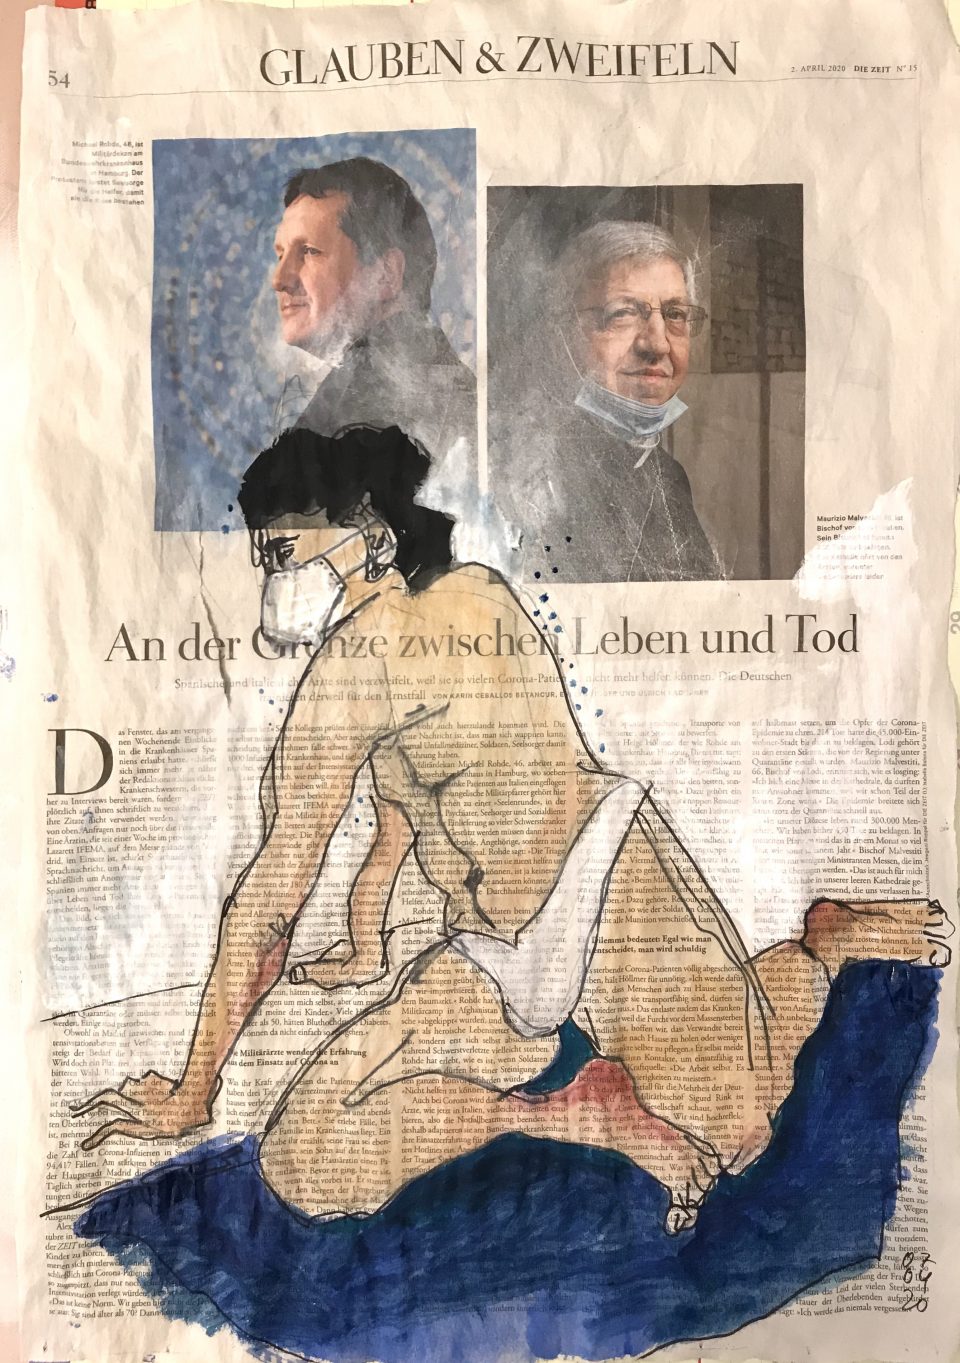 Glauben & Zweifeln – Figürliche Zeichnung auf ganzer Zeitungsseite.